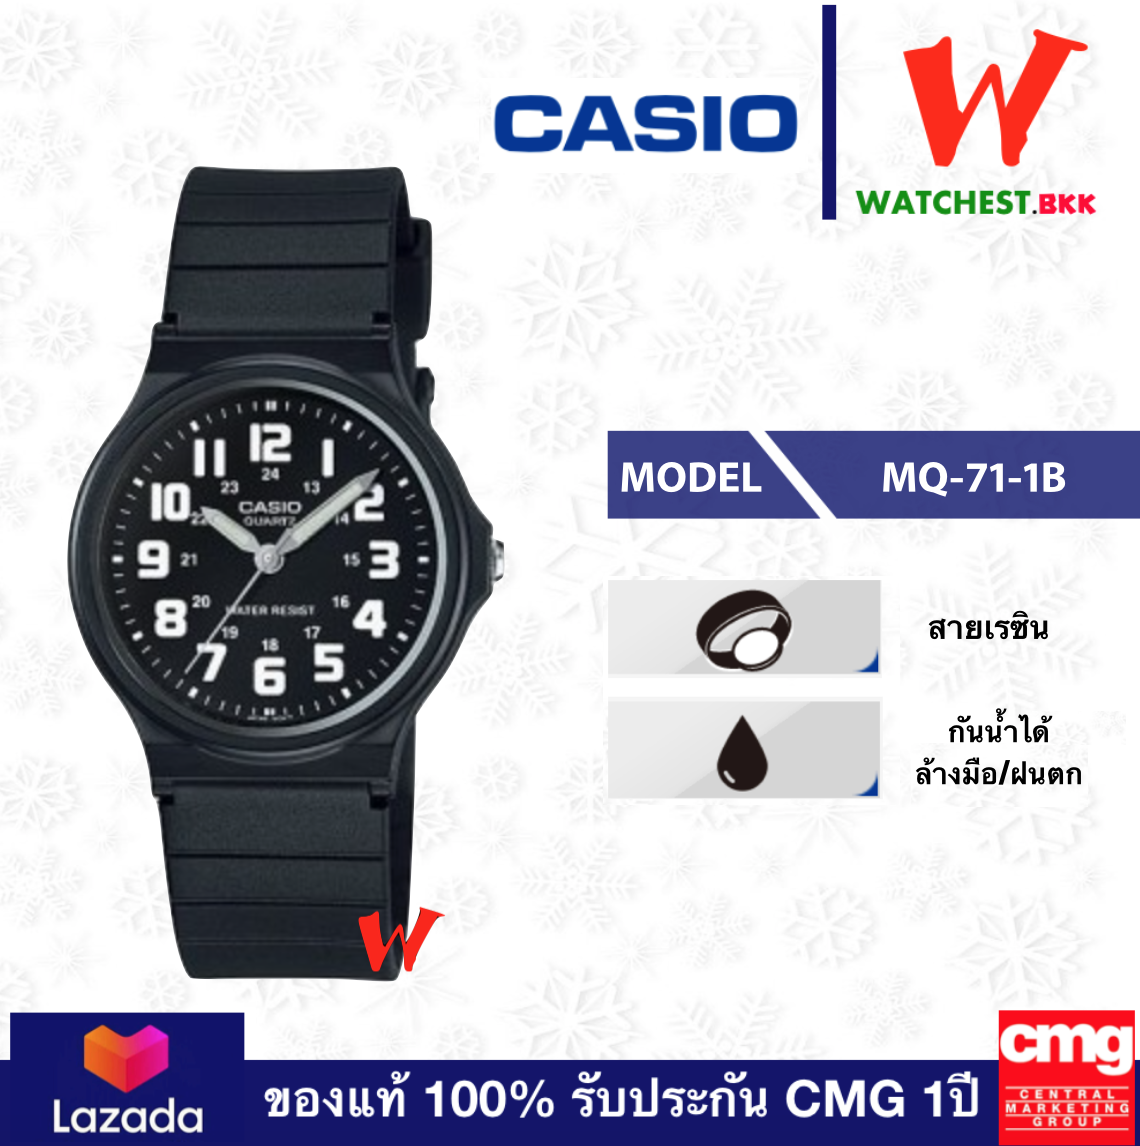 โปรพิเศษ!! casio นาฬิกาข้อสายยาง กันน้ำ30m รุ่น MQ71, MQ-71-1B/2B/4B คาสิโอ้ MQ-71 สายเรซิ่น ตัวล็อกแบบสายสอด (watchestbkk คาสิโอ แท้ ของแท้100% ประกัน CMG)